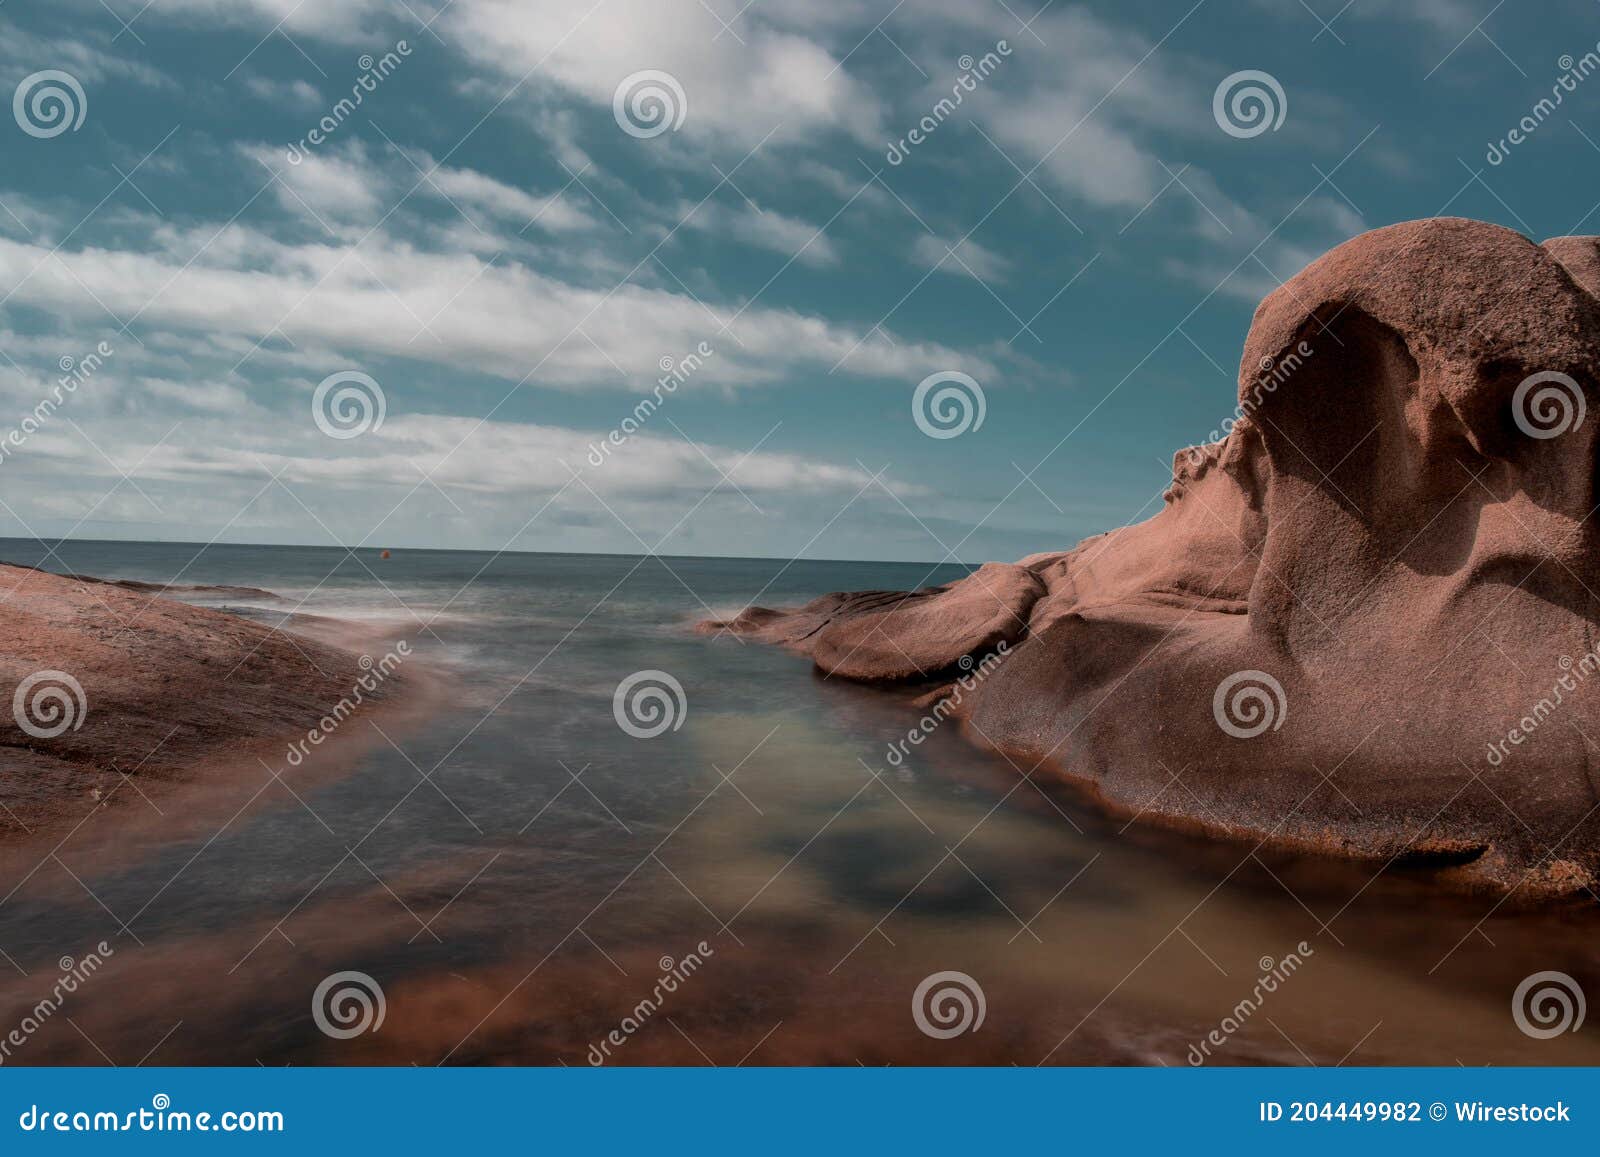 agua efecto seda con rocas planas